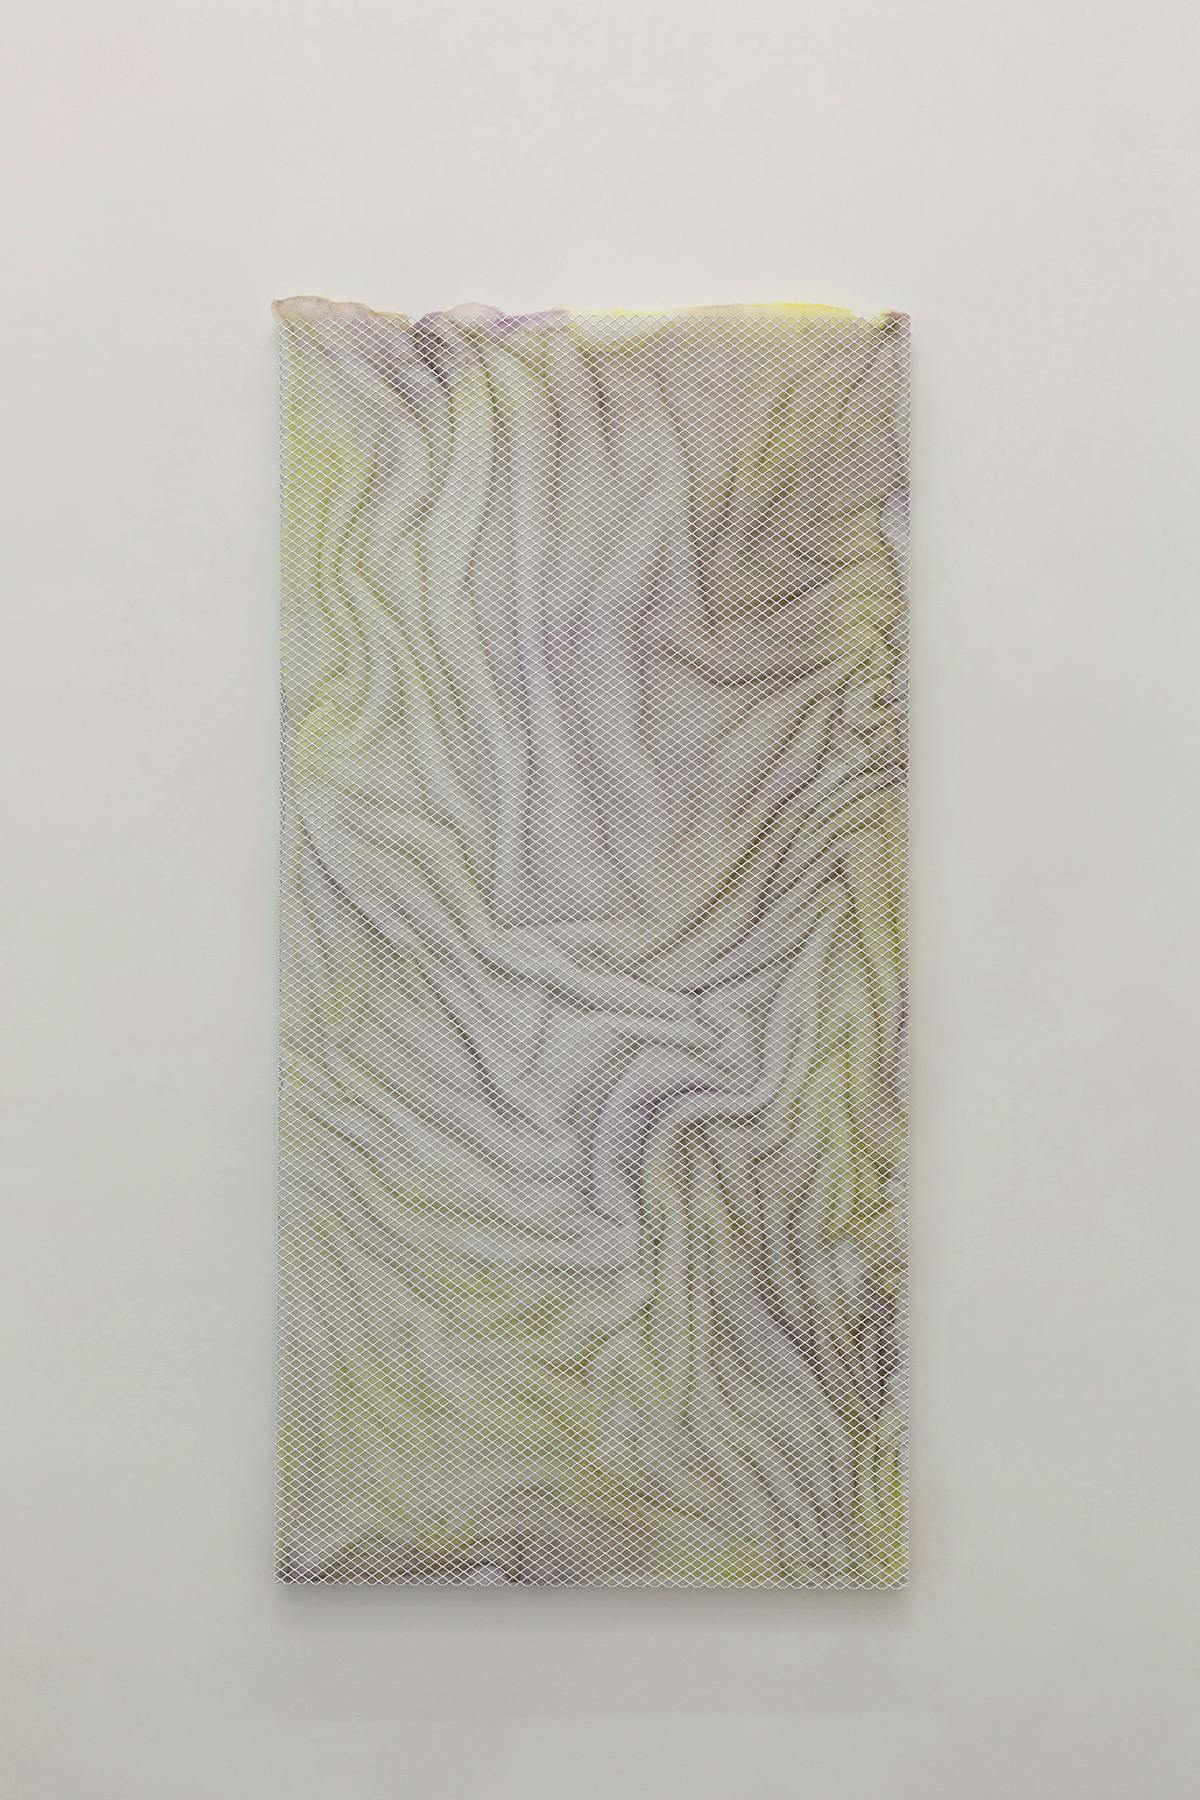 Deserto #826, Alessandro Costanzo, 2022, acrilico su ovatta sintetica e rete metallica, 180 x 90 x 5 cm